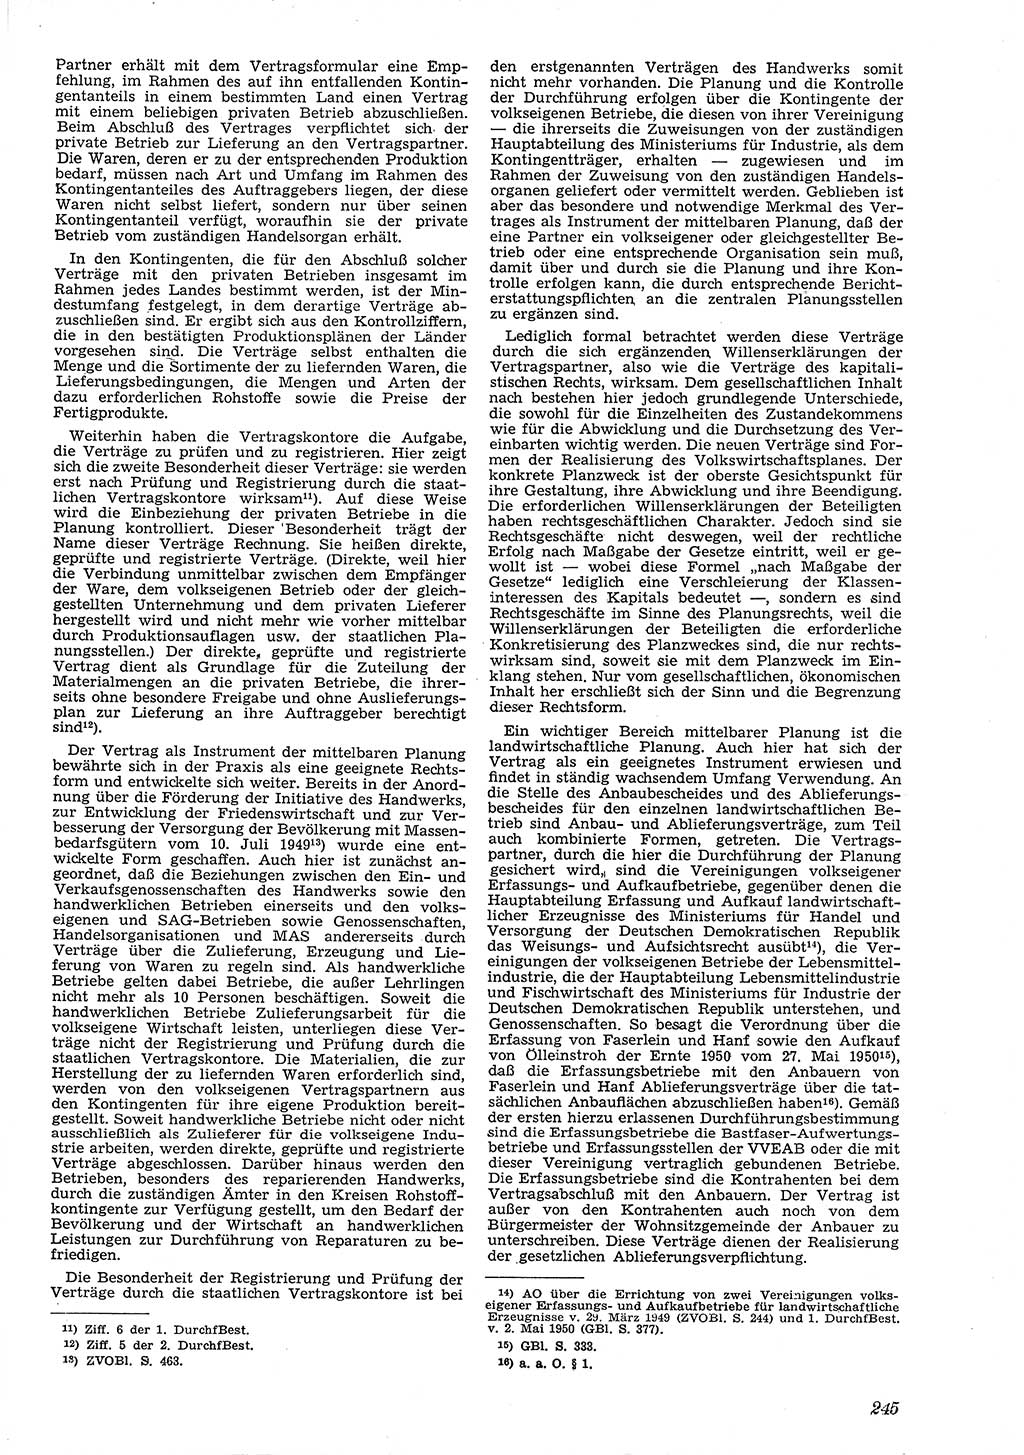 Neue Justiz (NJ), Zeitschrift für Recht und Rechtswissenschaft [Deutsche Demokratische Republik (DDR)], 4. Jahrgang 1950, Seite 245 (NJ DDR 1950, S. 245)